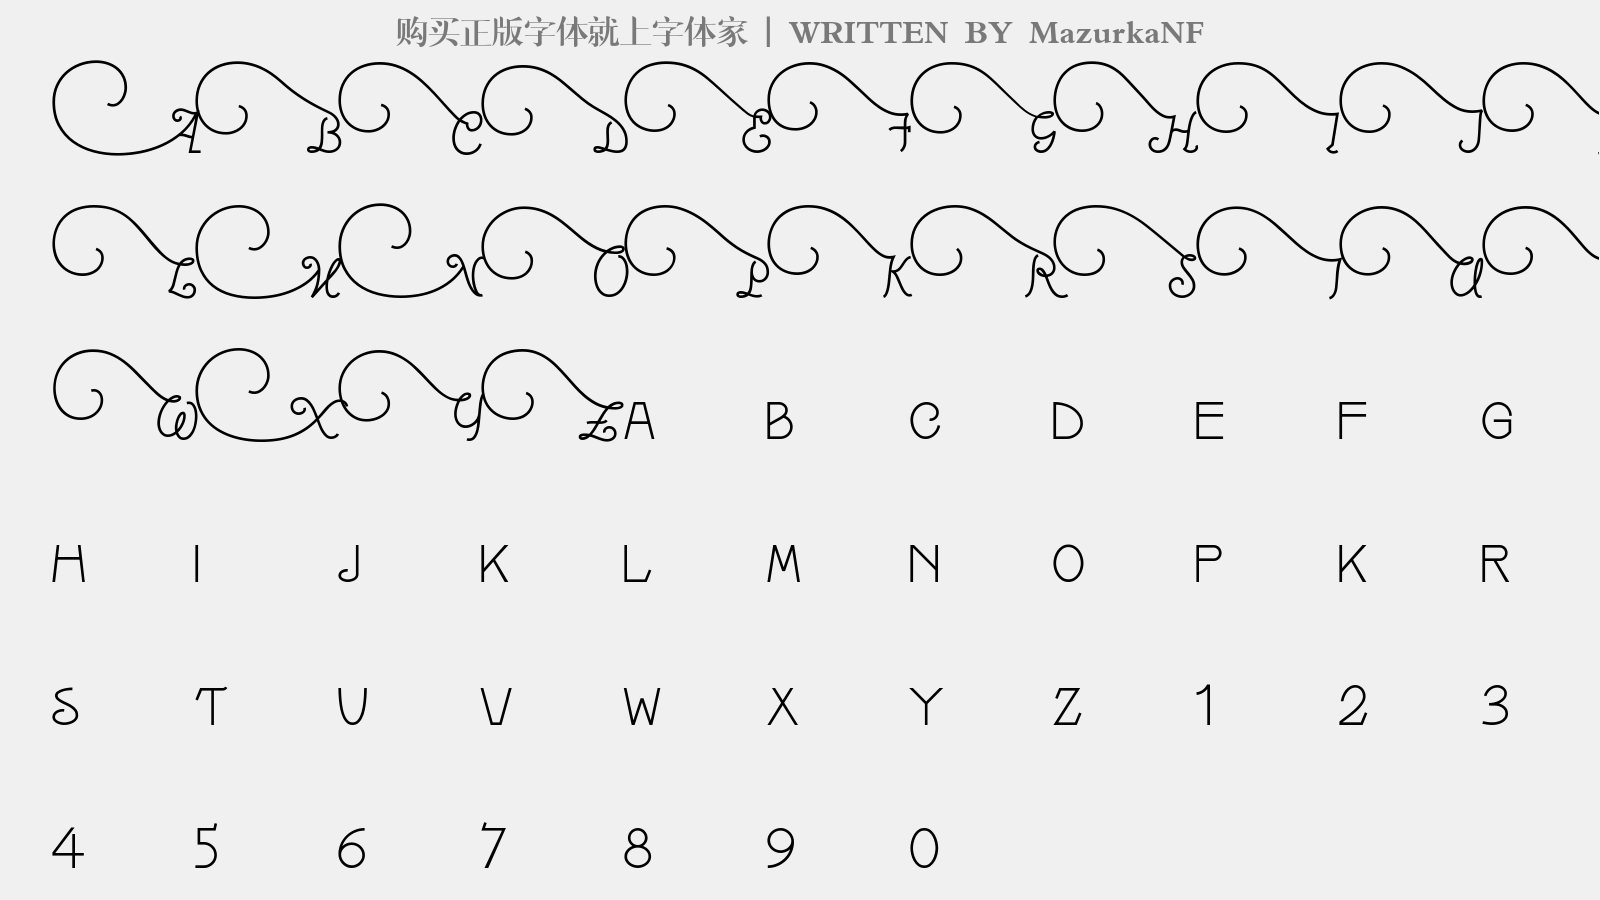 MazurkaNF - 大写字母/小写字母/数字